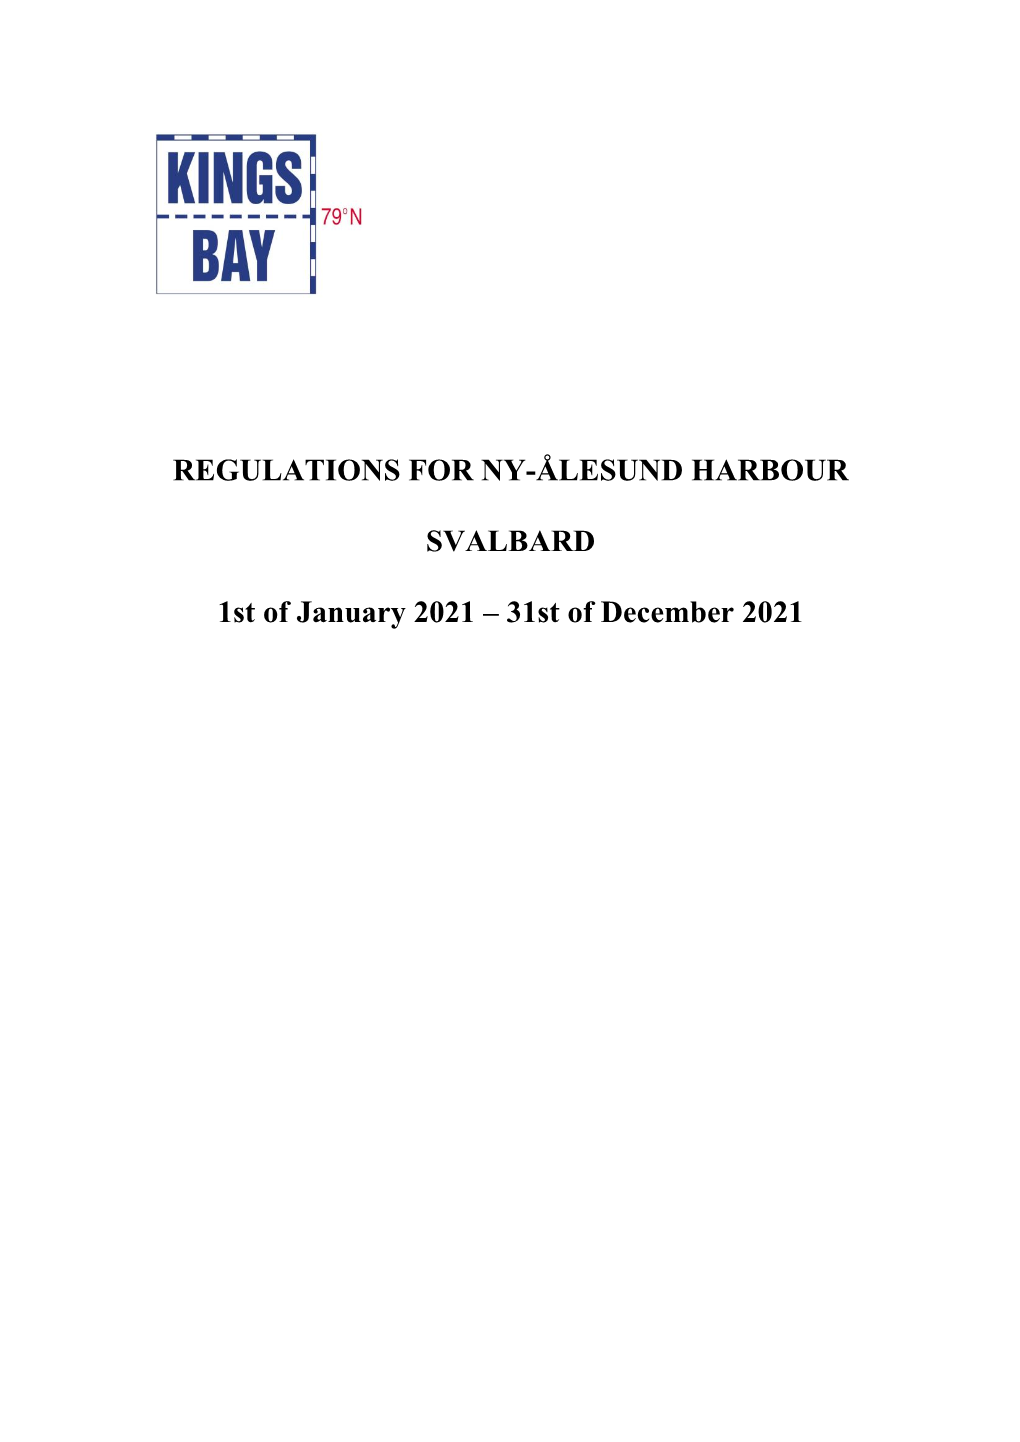 Regulations for Ny-Ålesund Harbour